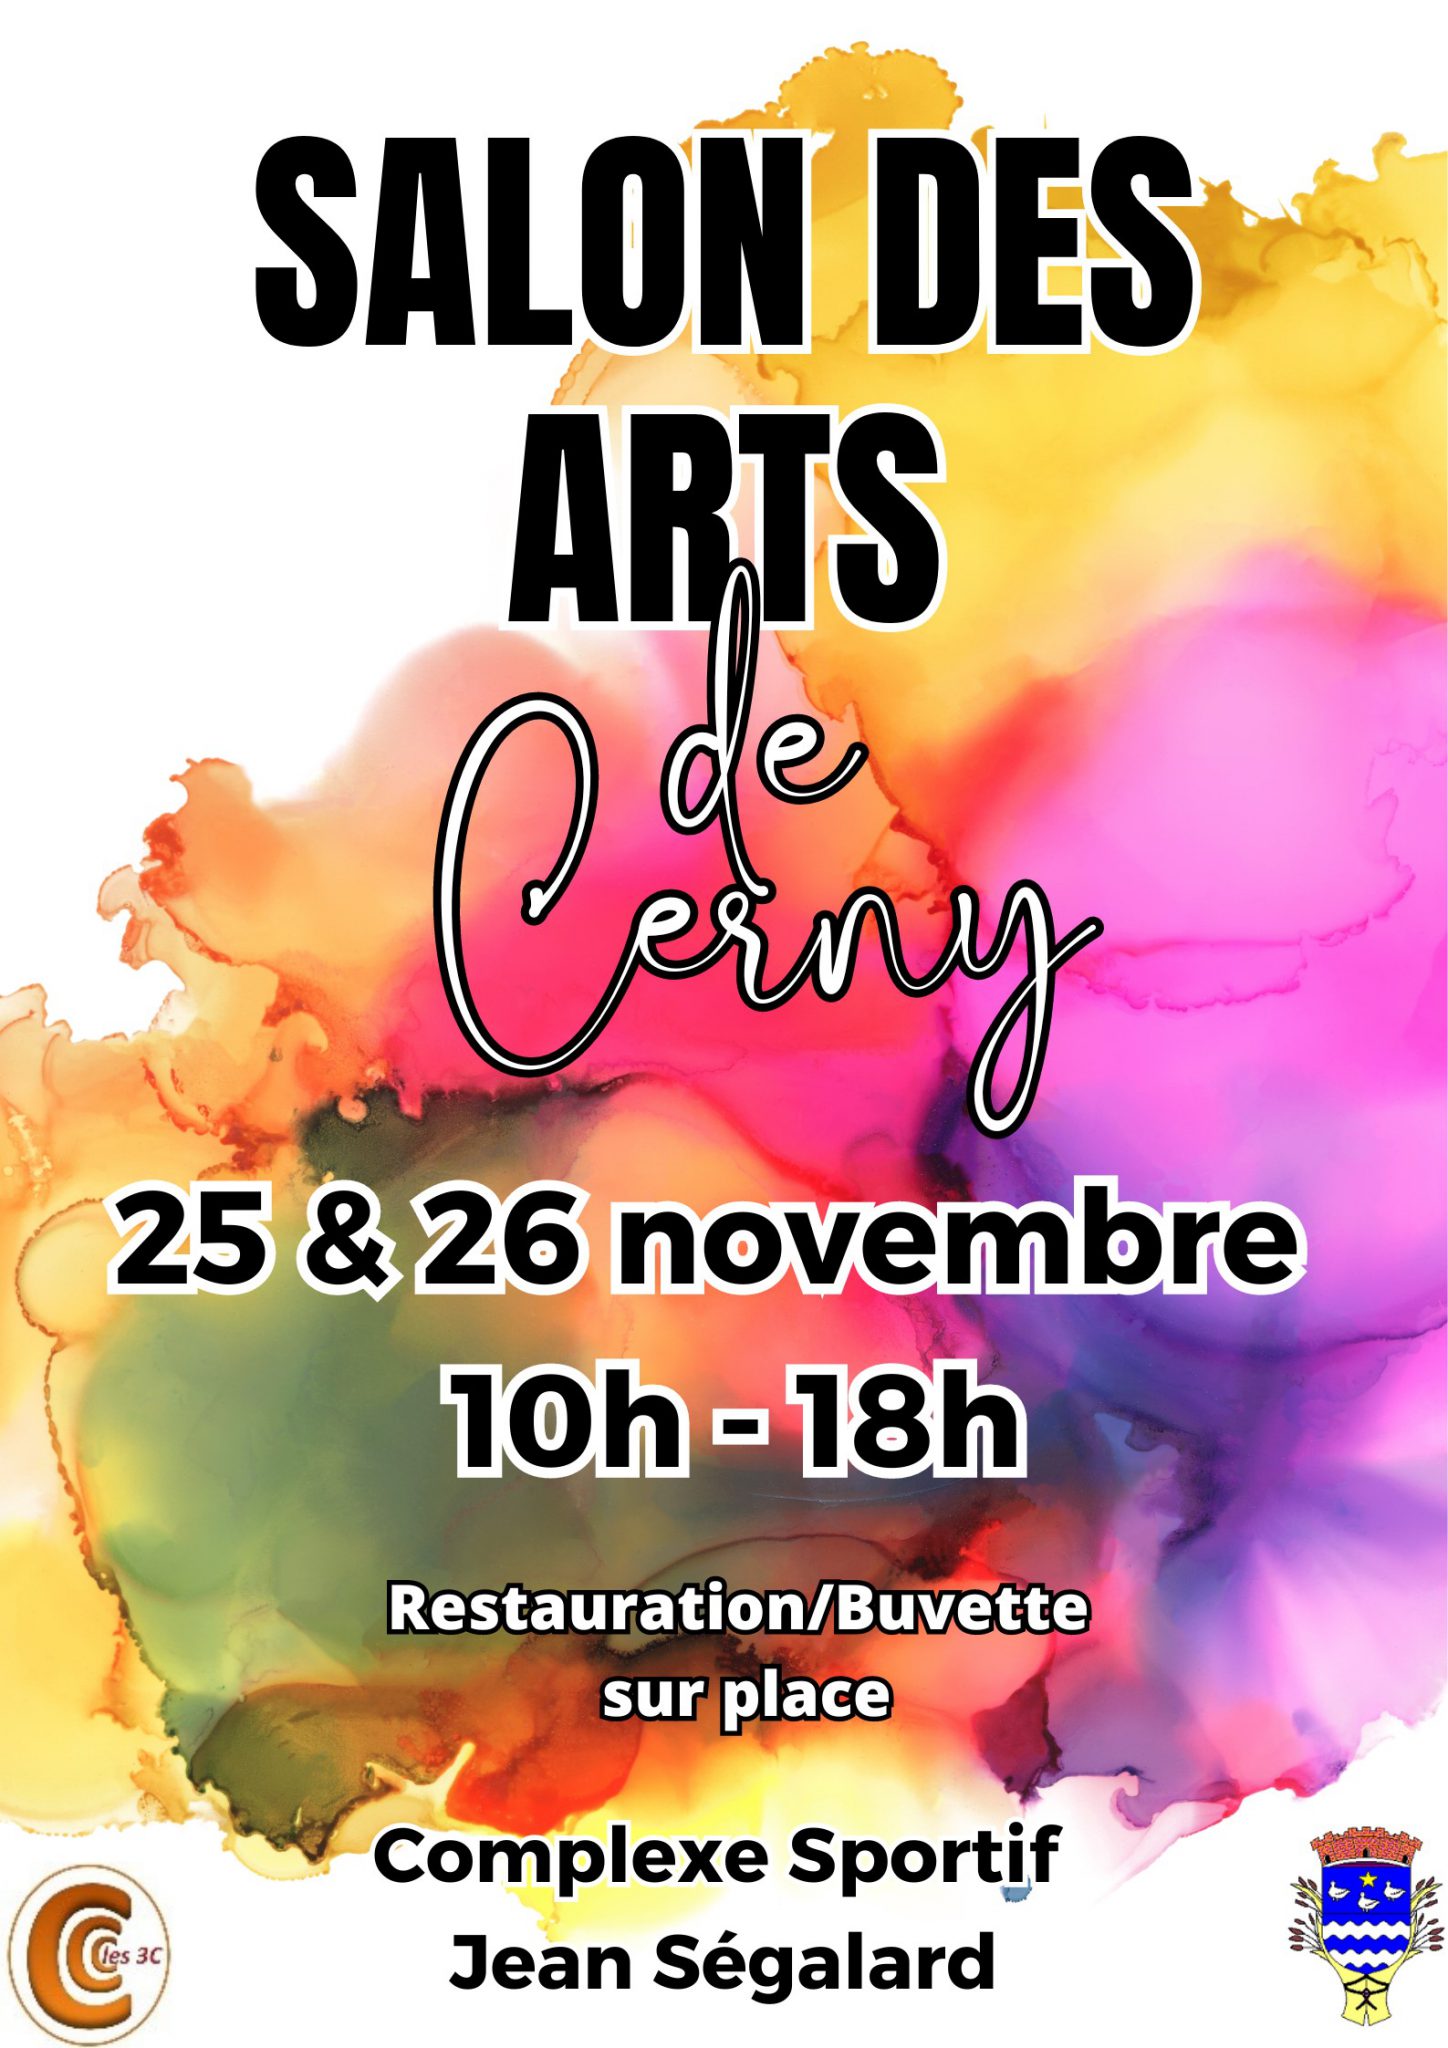 Salon des Arts de Cerny